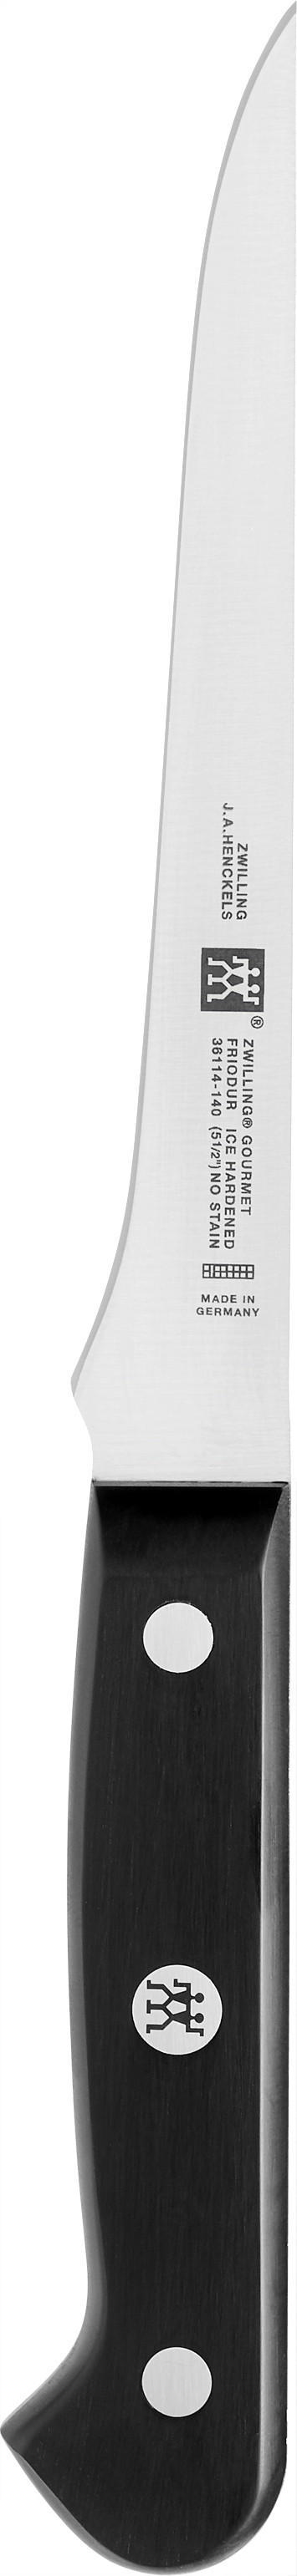 AUSBEINMESSER  14 cm  - Silberfarben/Schwarz, Kunststoff/Metall (26cm) - Zwilling